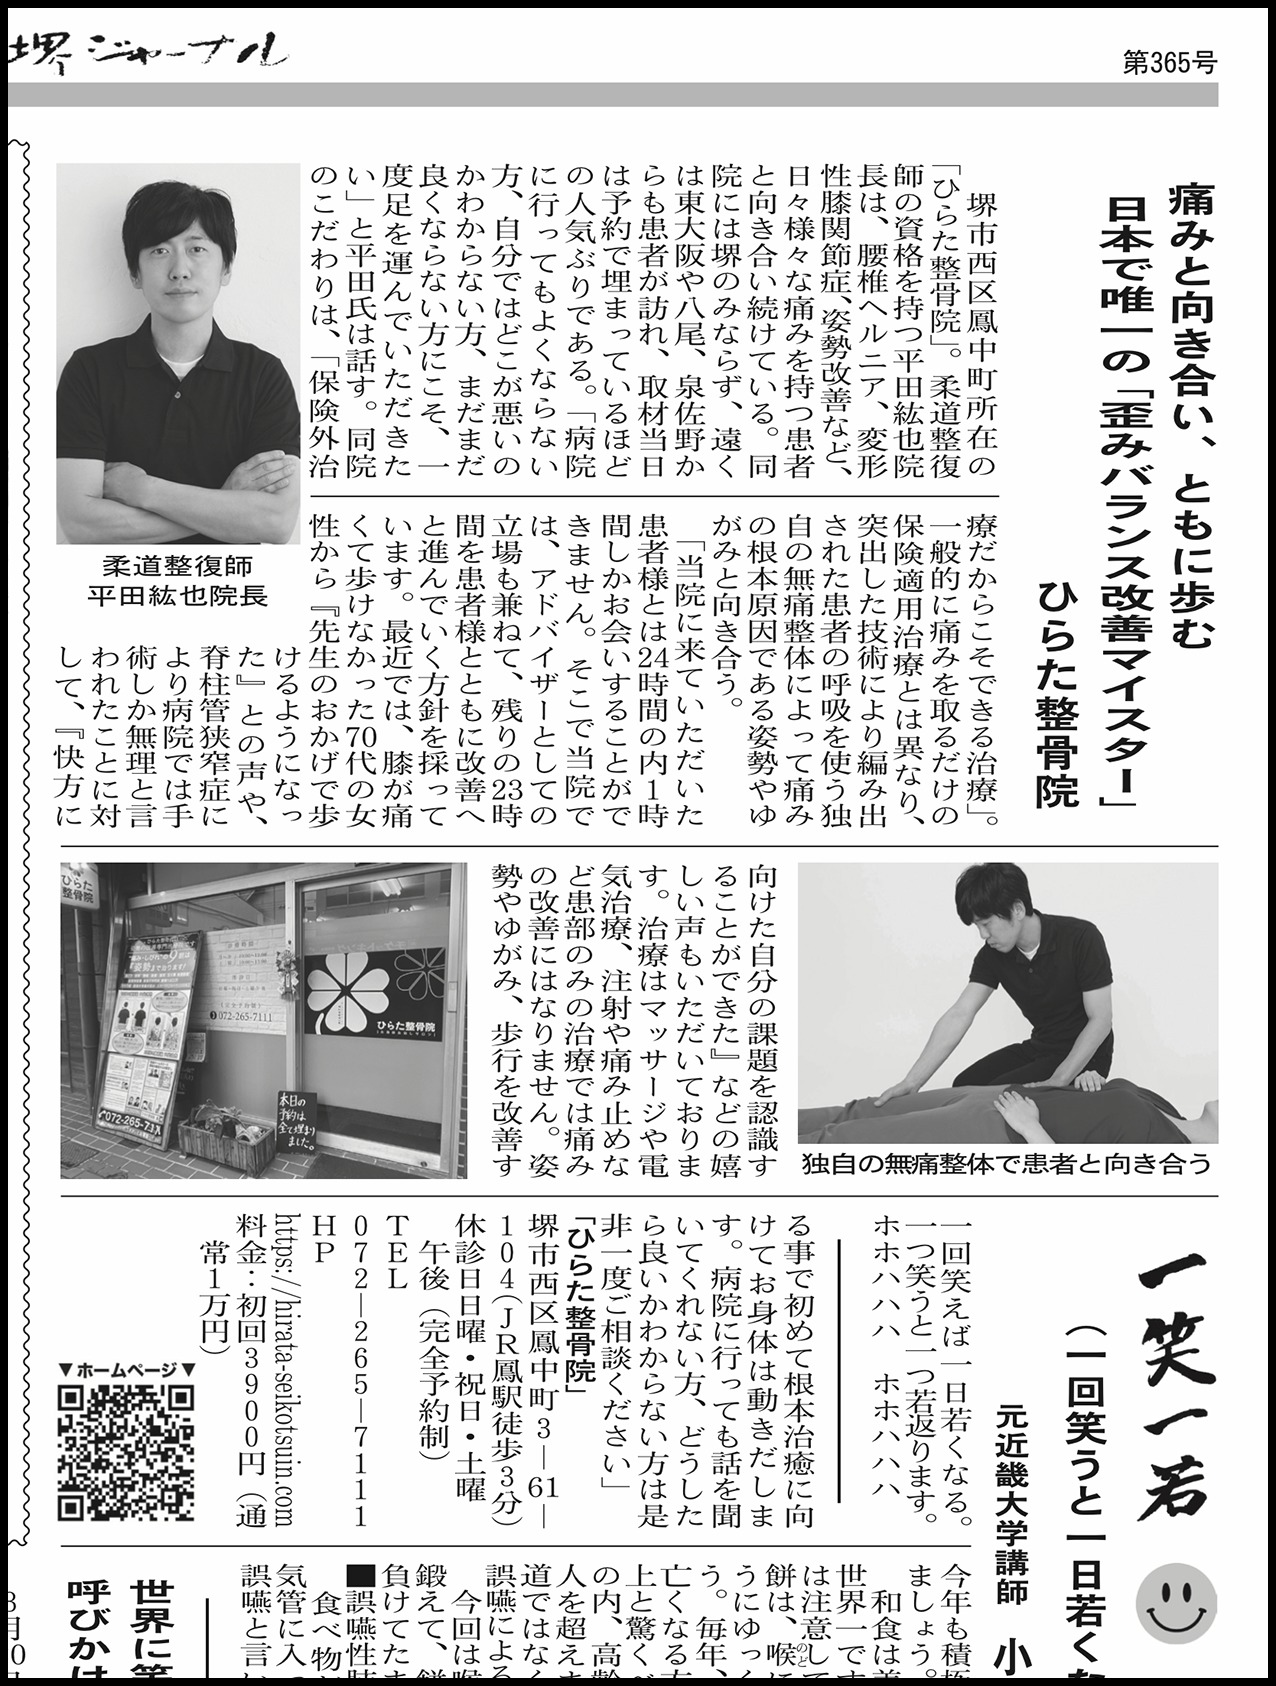 ひらた整骨院は堺ジャーナル新聞に載りました。